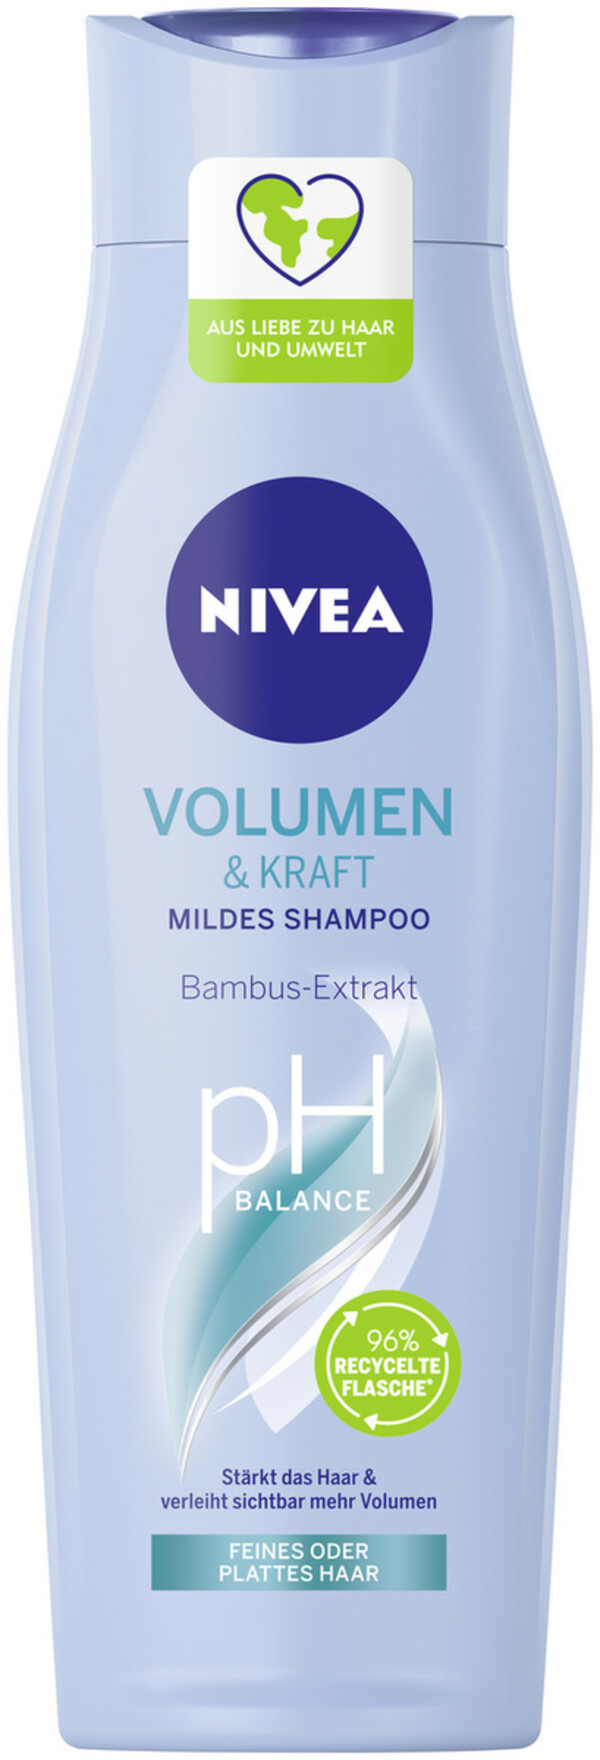 Bild 1 von Nivea Volumen & Kraft mildes Shampoo pH Balance 250ML